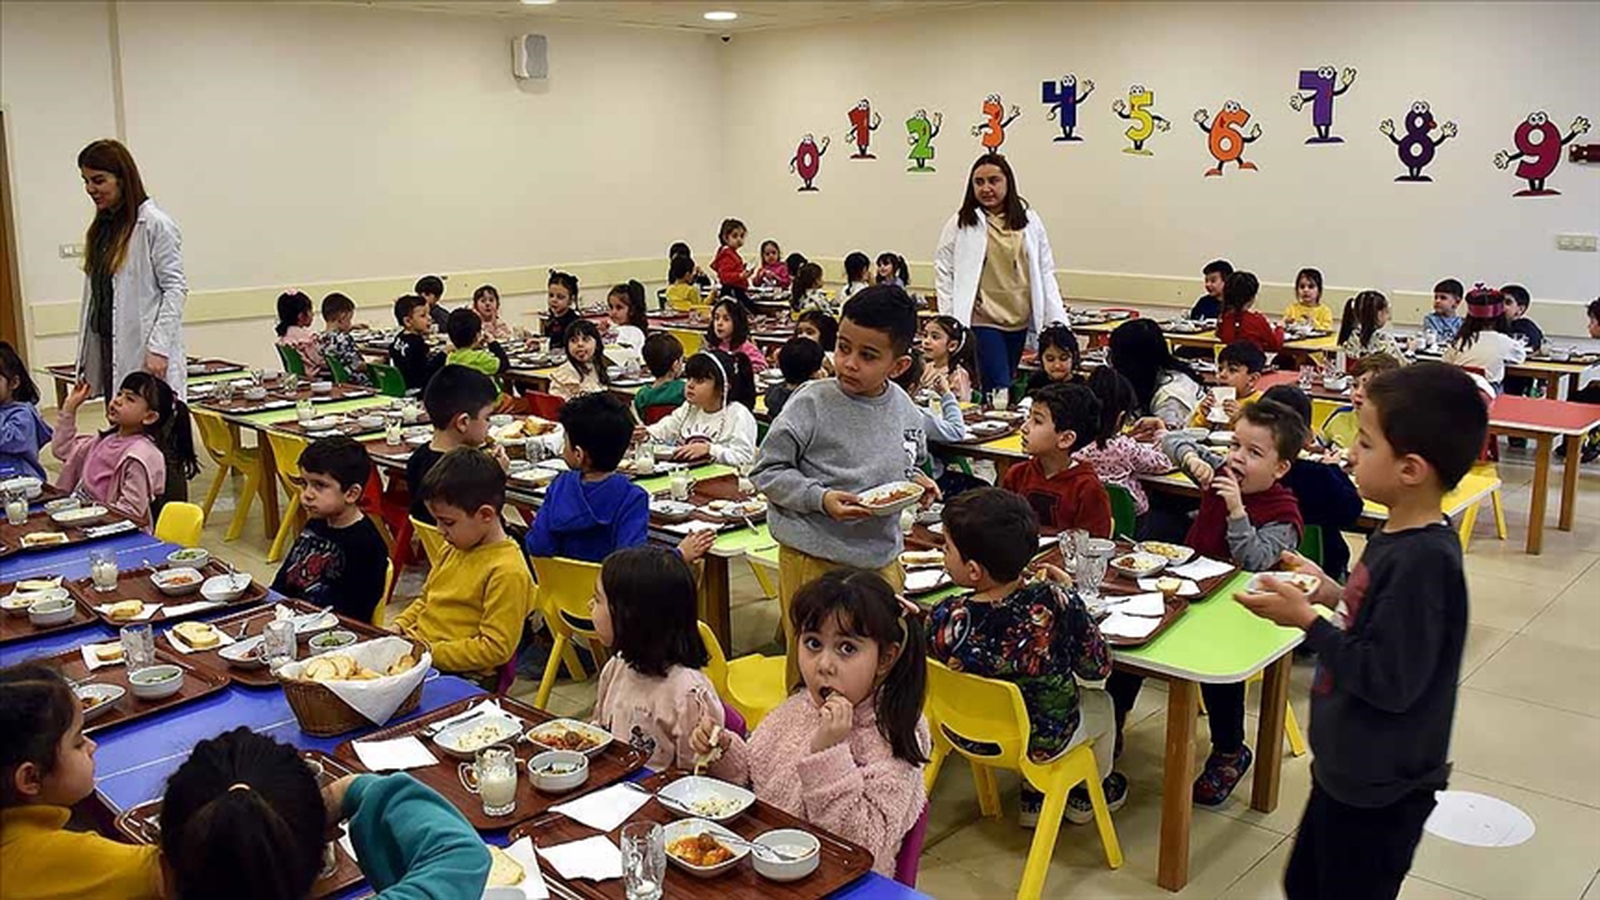 Okullarda Ücretsiz Yemek Uygulaması: Türkiye ve Avrupa’da Karşılaştırması?